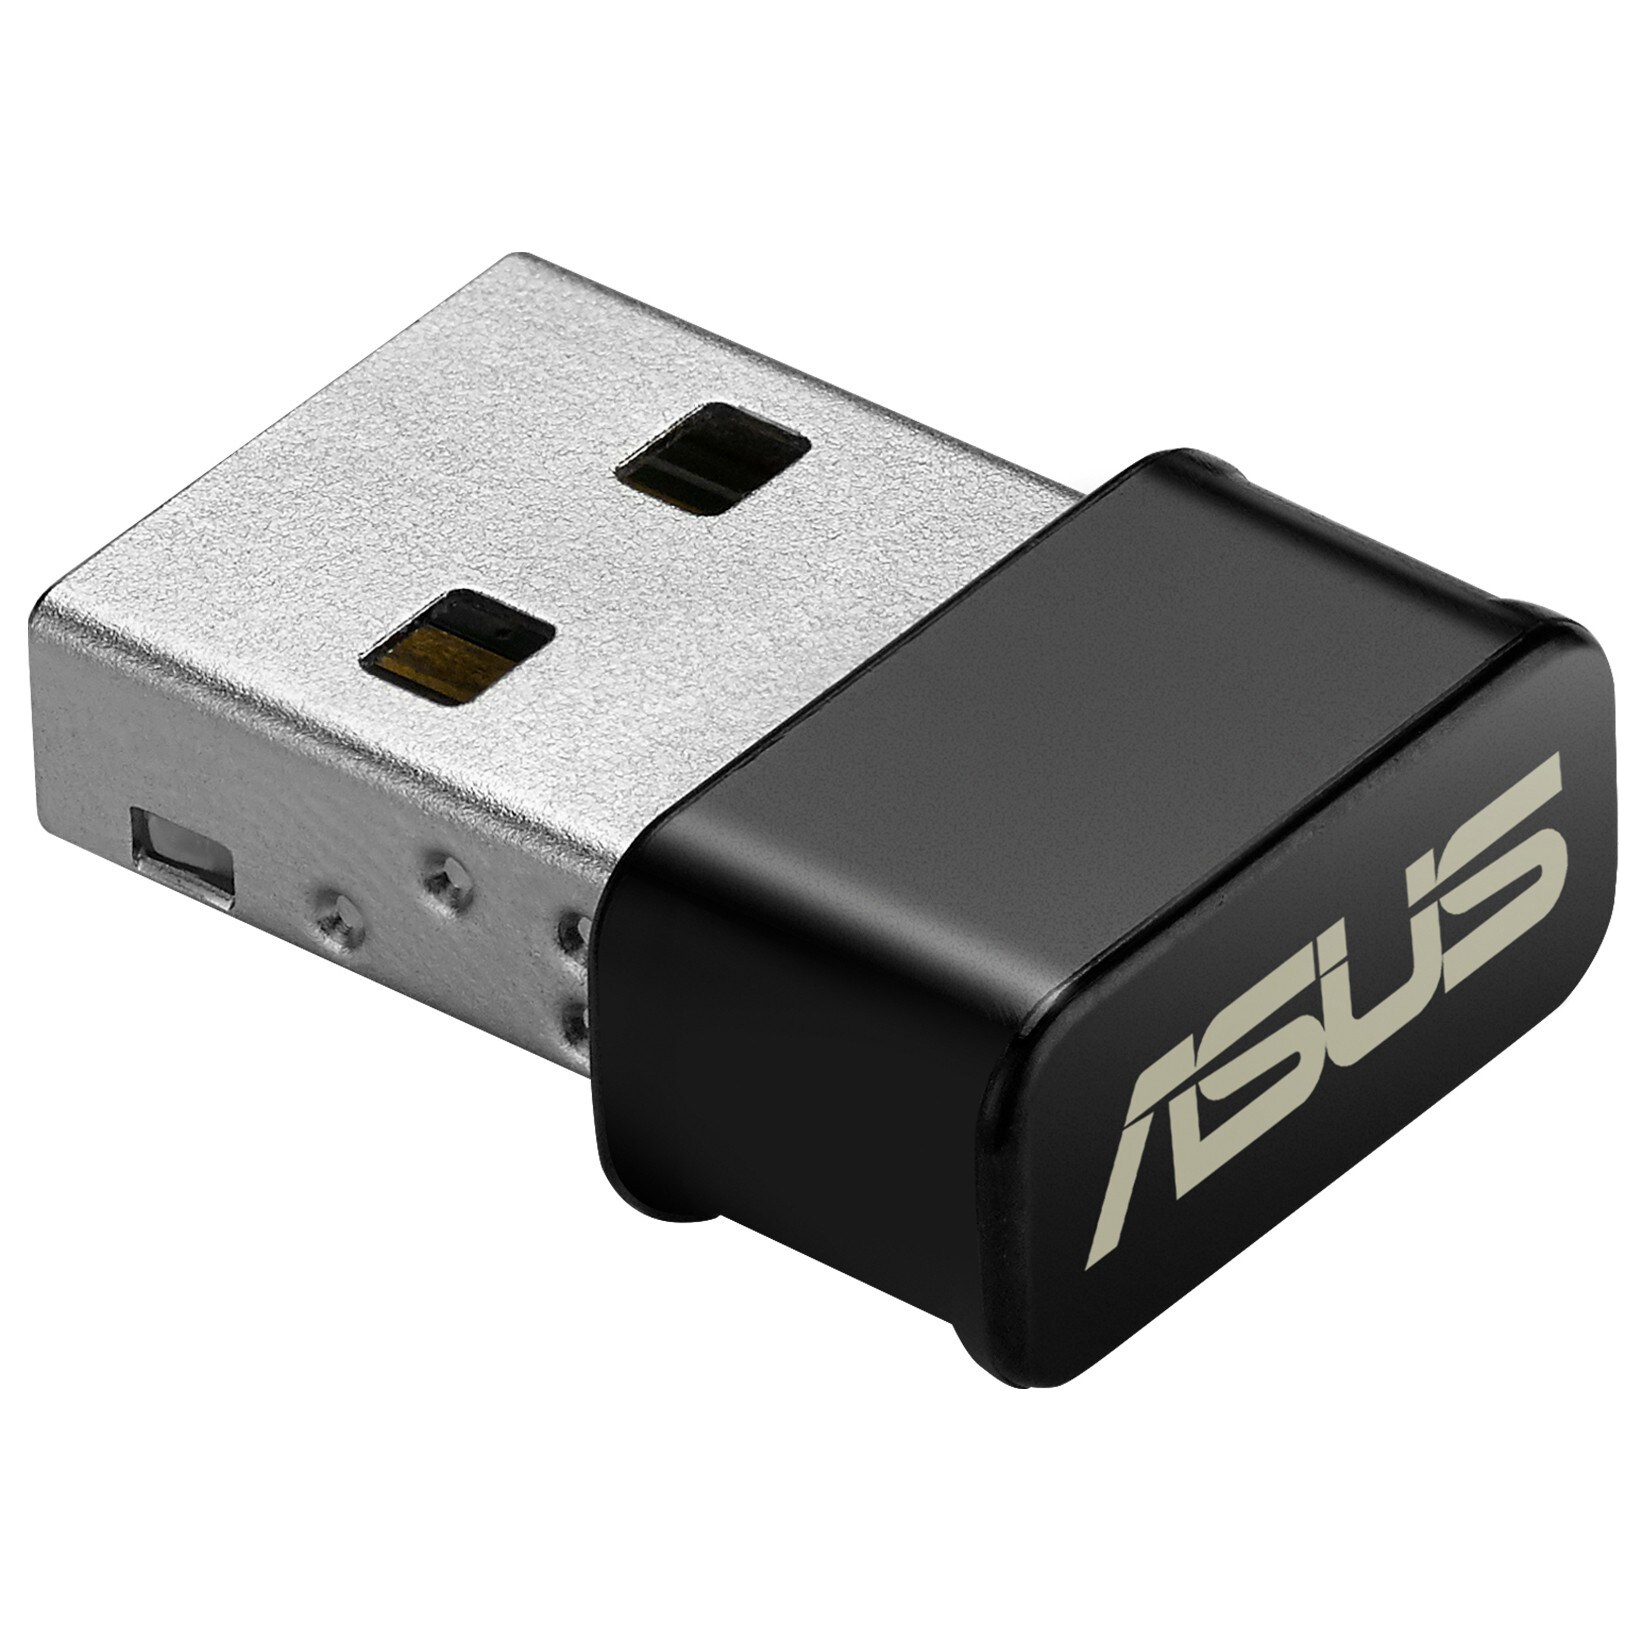 Asus USB-AC53 Nano wi-fi-ac adapter (sort) - Netværkskort og ...